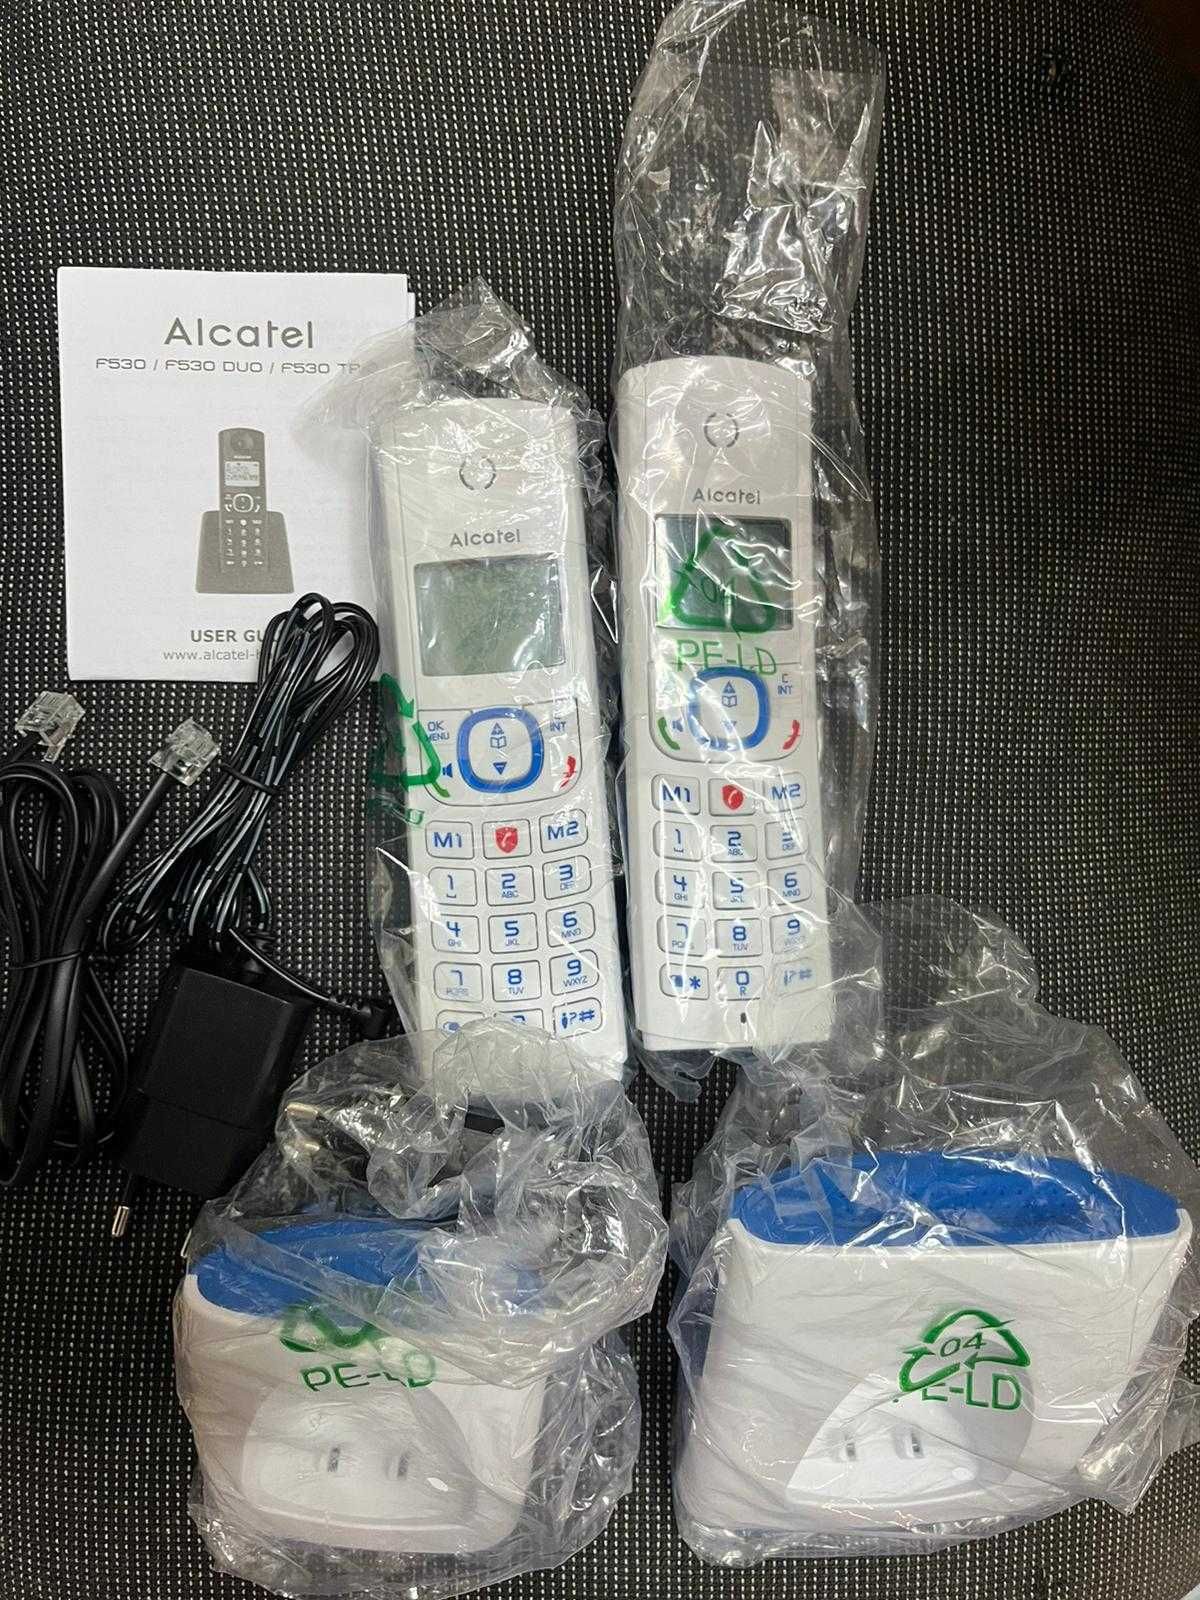 Безжичен телефон Alcatel F530 Duo с 2 слушалки